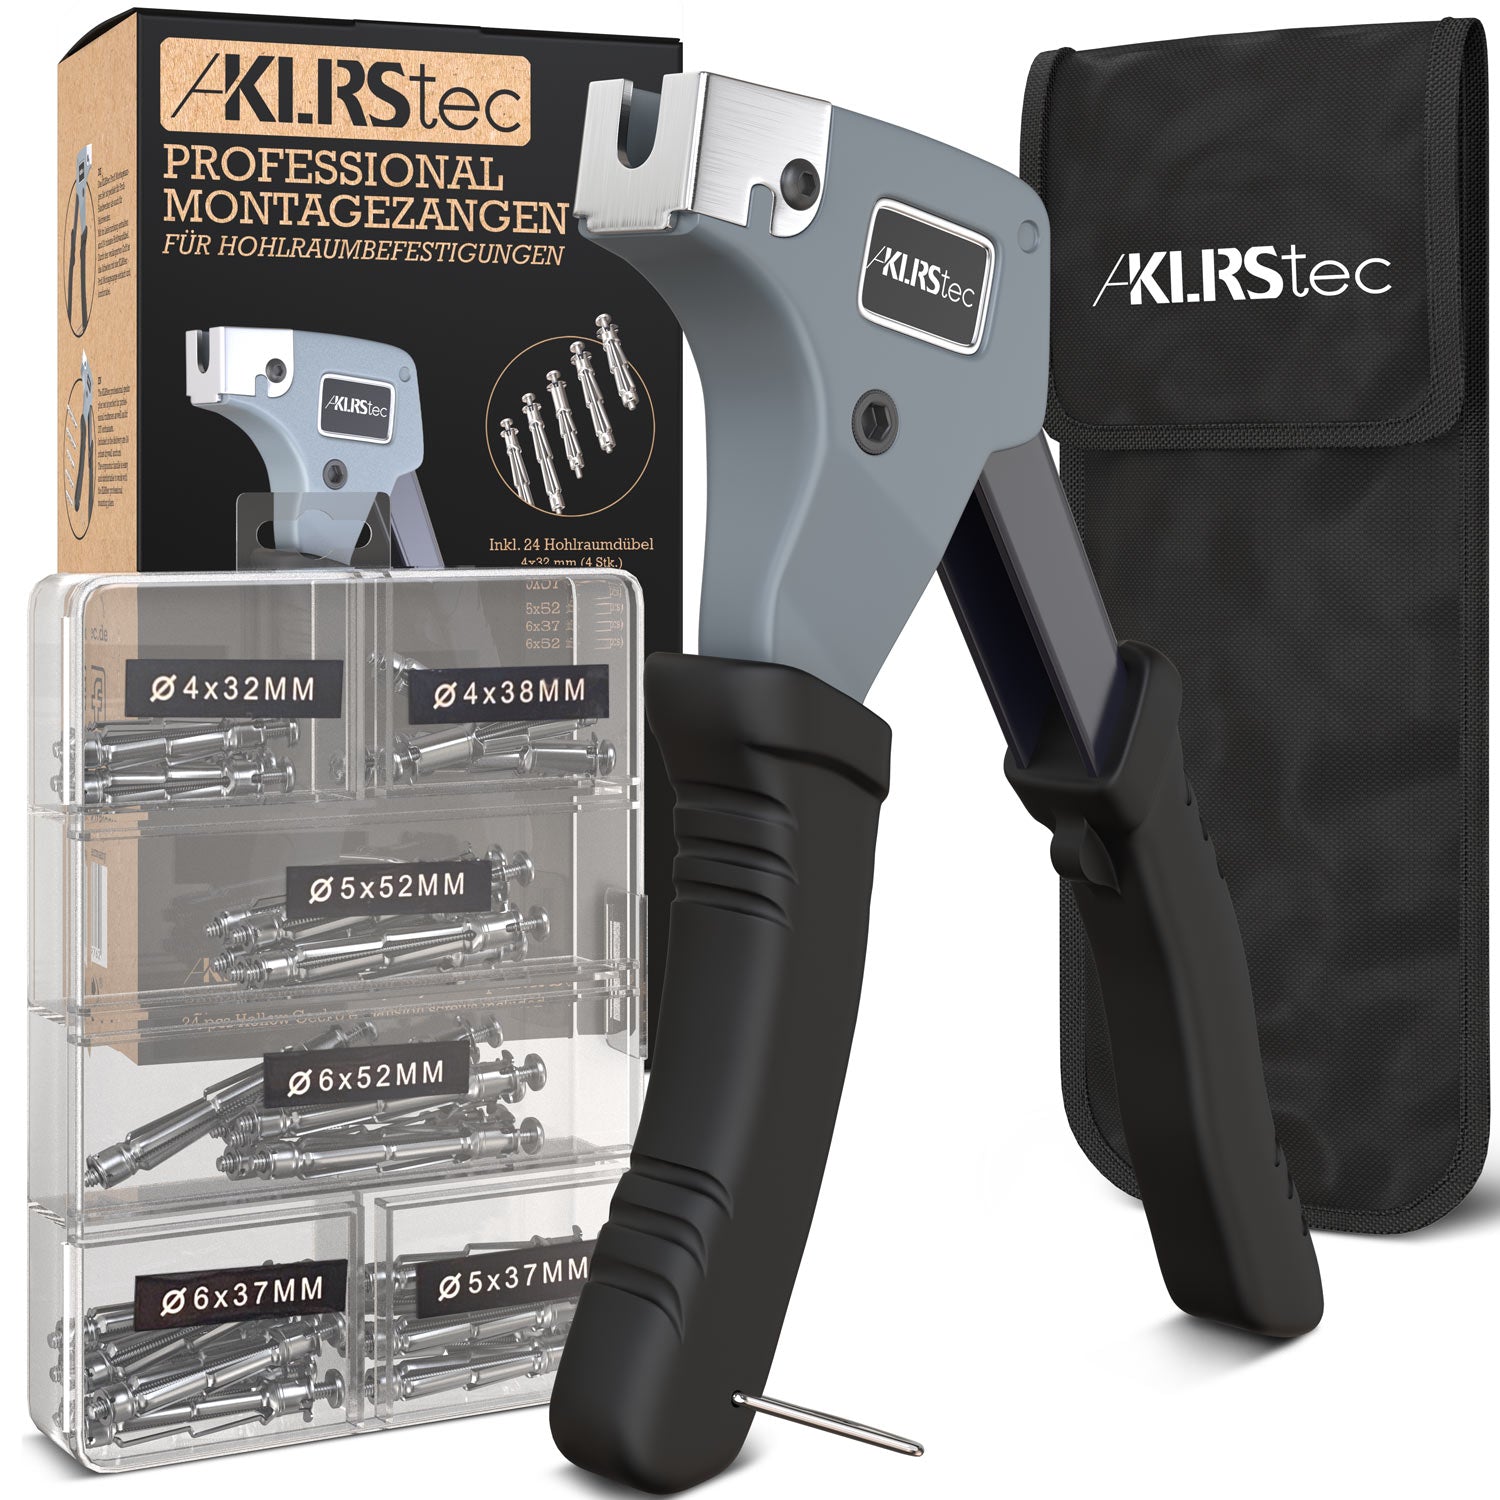 KLRStec - Weitere Tools & Zubehör